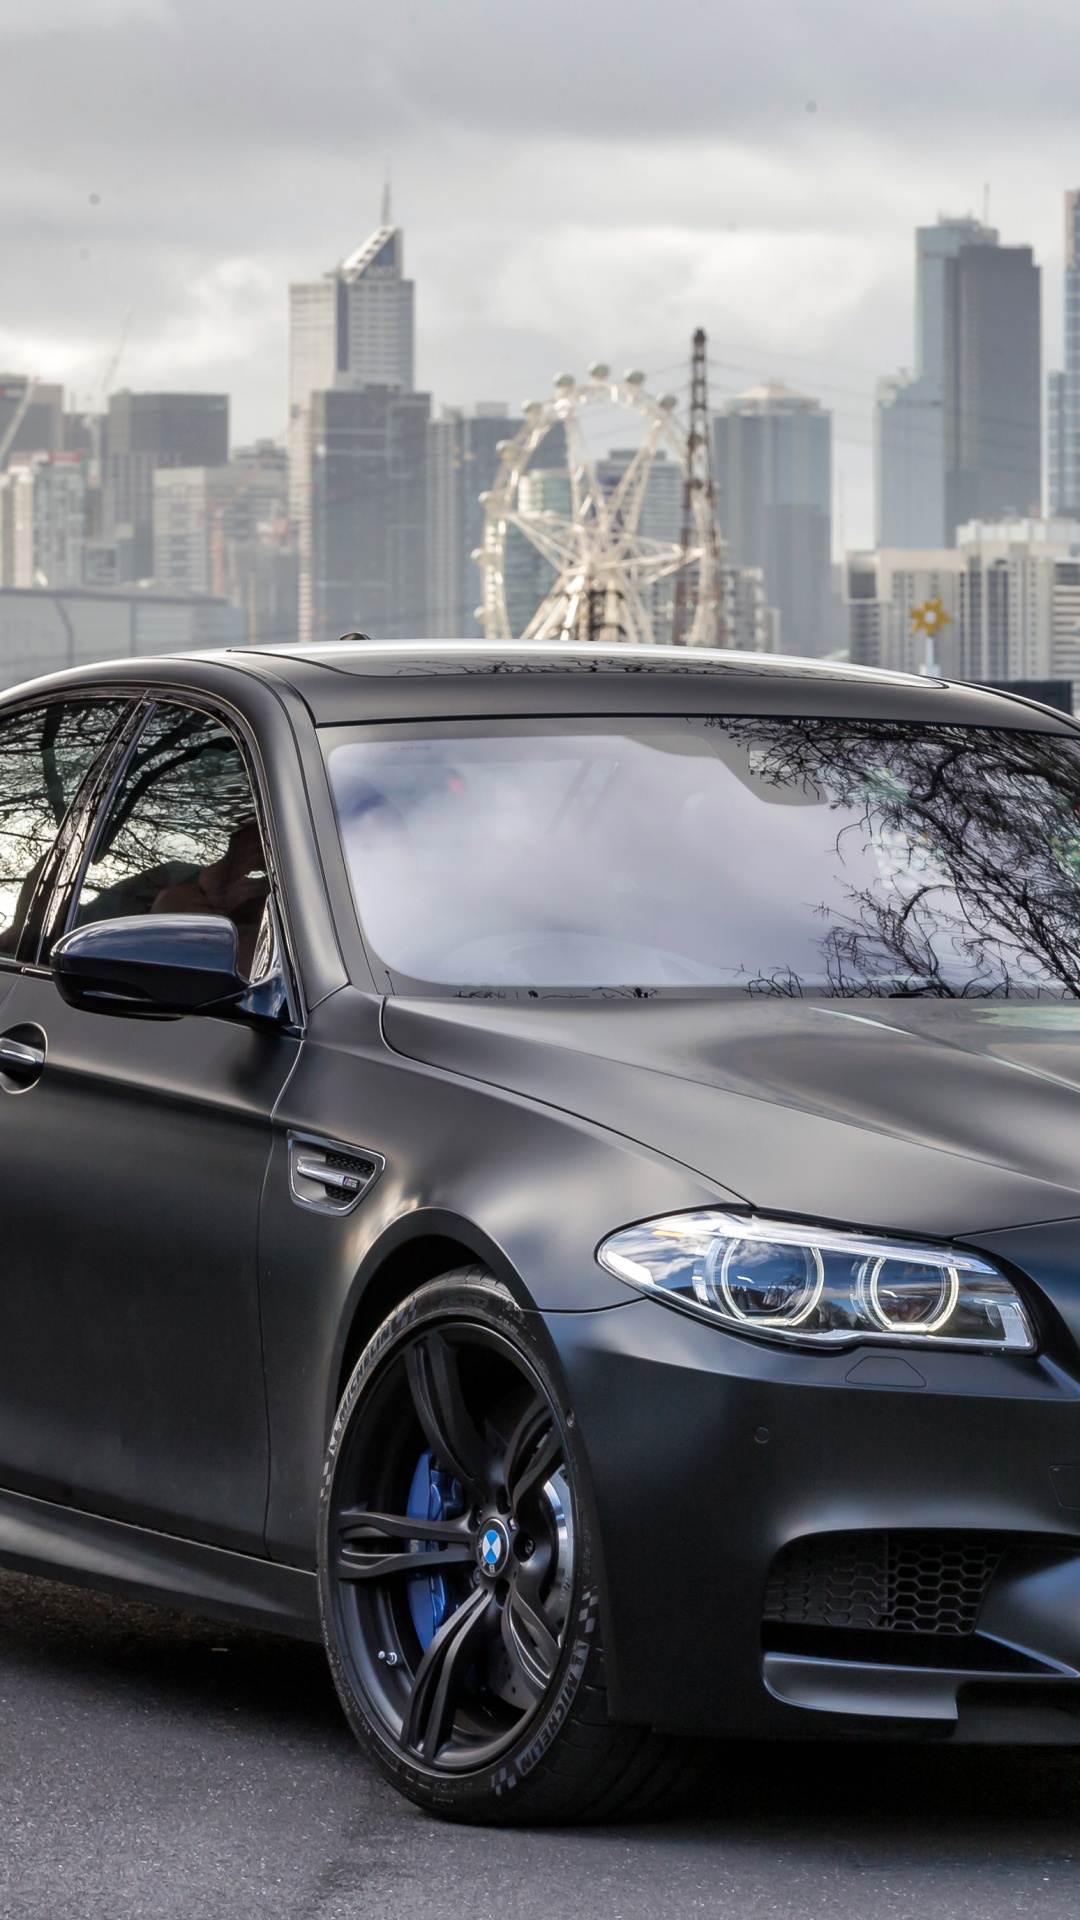 2018年BMW M5, 宝马, 宝马5系, 执行汽车, 铝合金轮毂 壁纸 1080x1920 允许